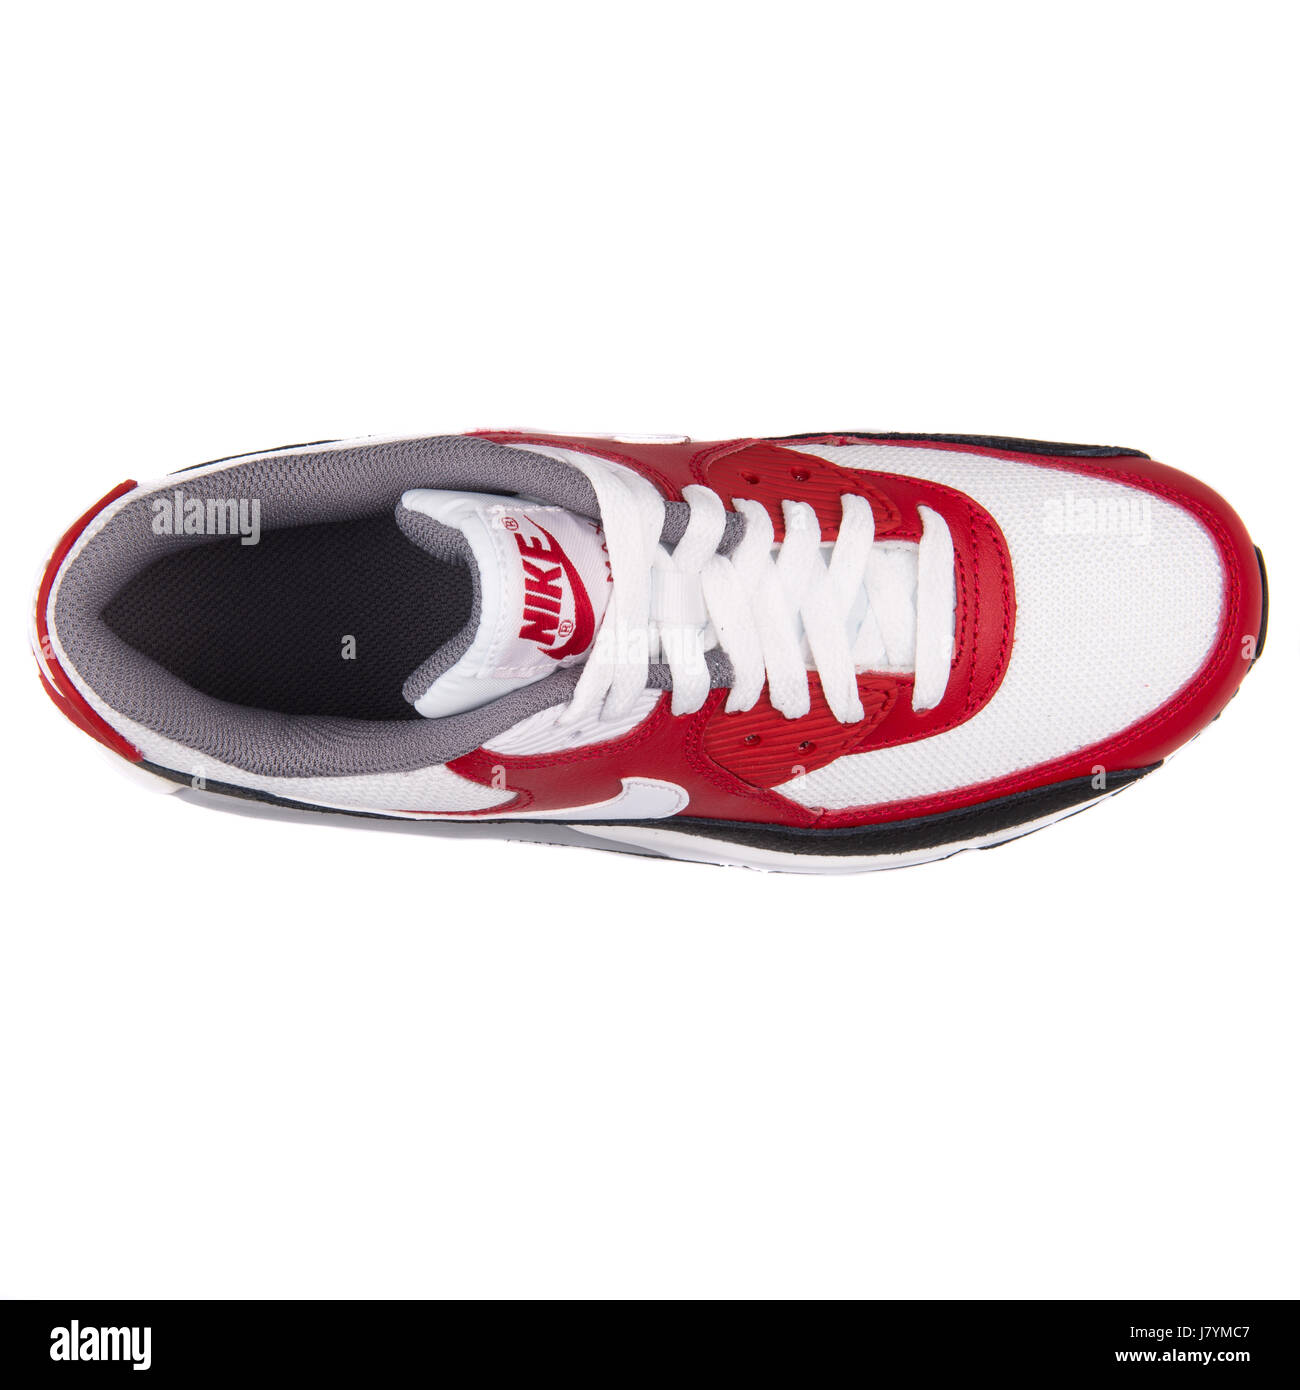 Nike Air Max 90 GS (Mesh) Rouge Blanc et Noir Chaussures de sport jeunesse  - 724824-102 Photo Stock - Alamy